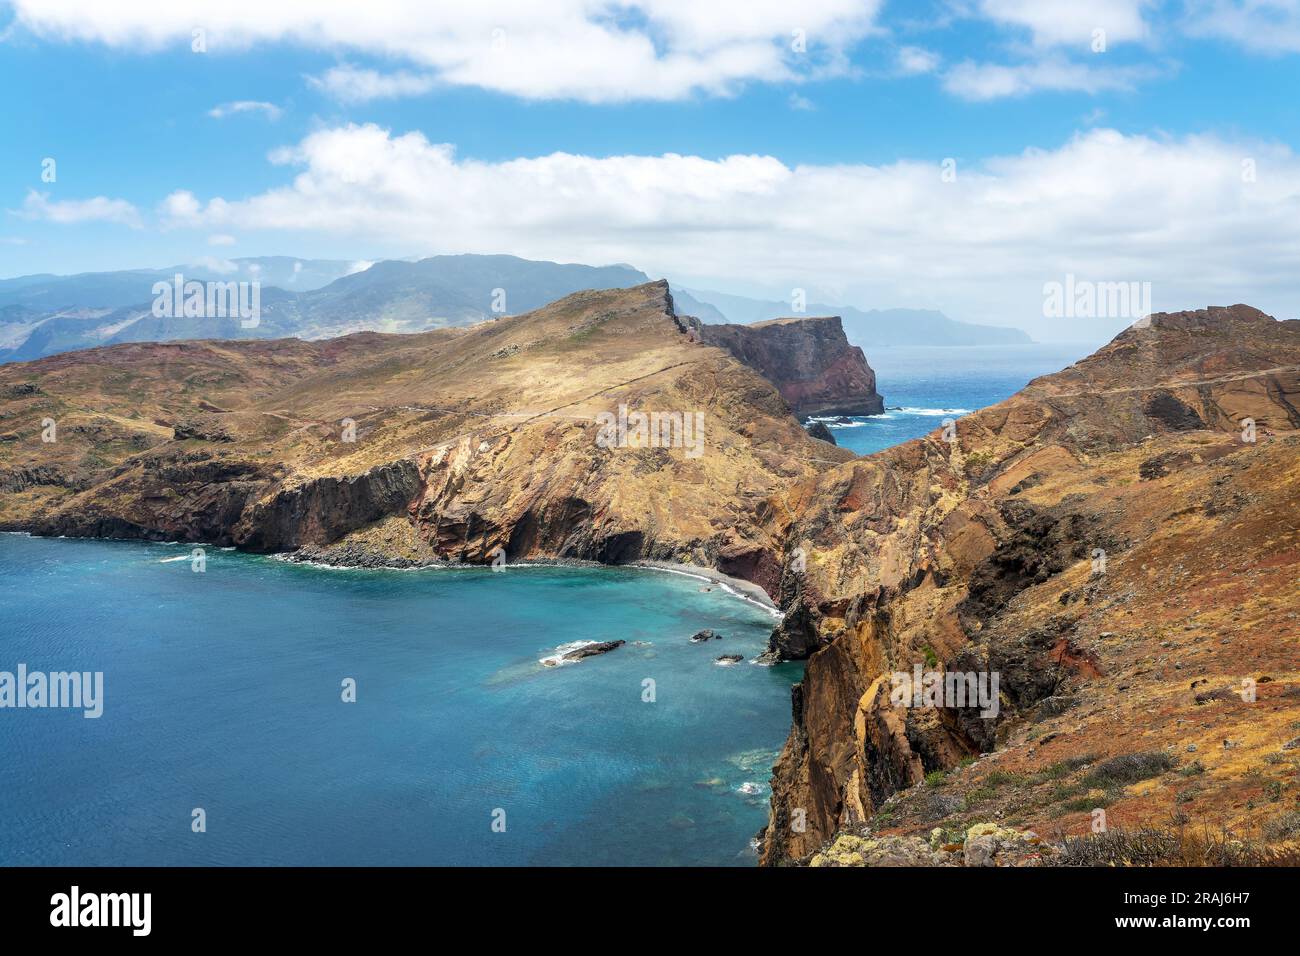 Scenic landscape at Ponta de São Lourenço, Madeira island, Portugal Stock Photo